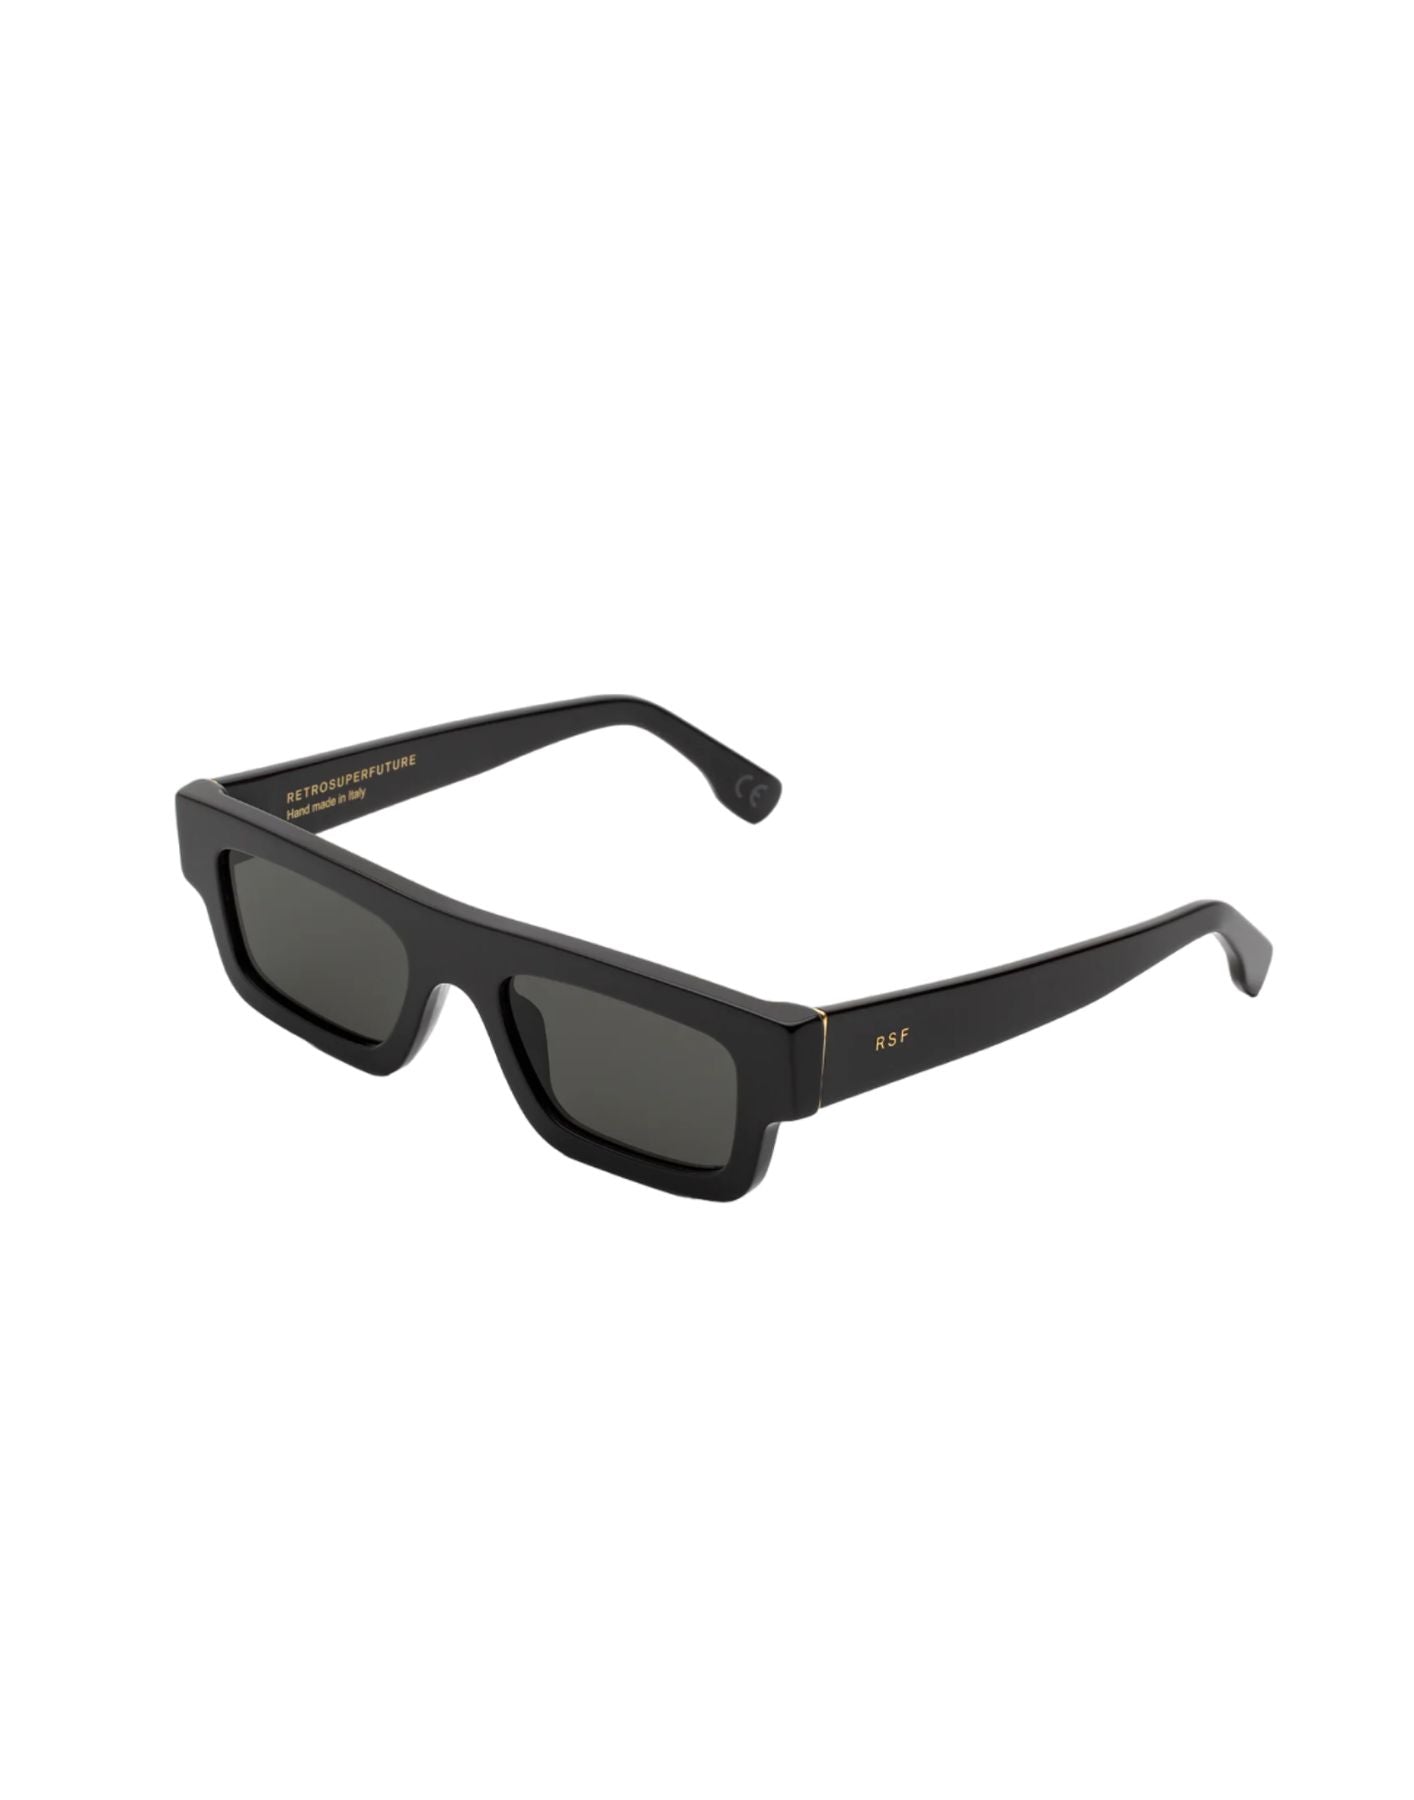 Sonnenbrille Unisex Colpo Black Zw5 RetroSuperFuture